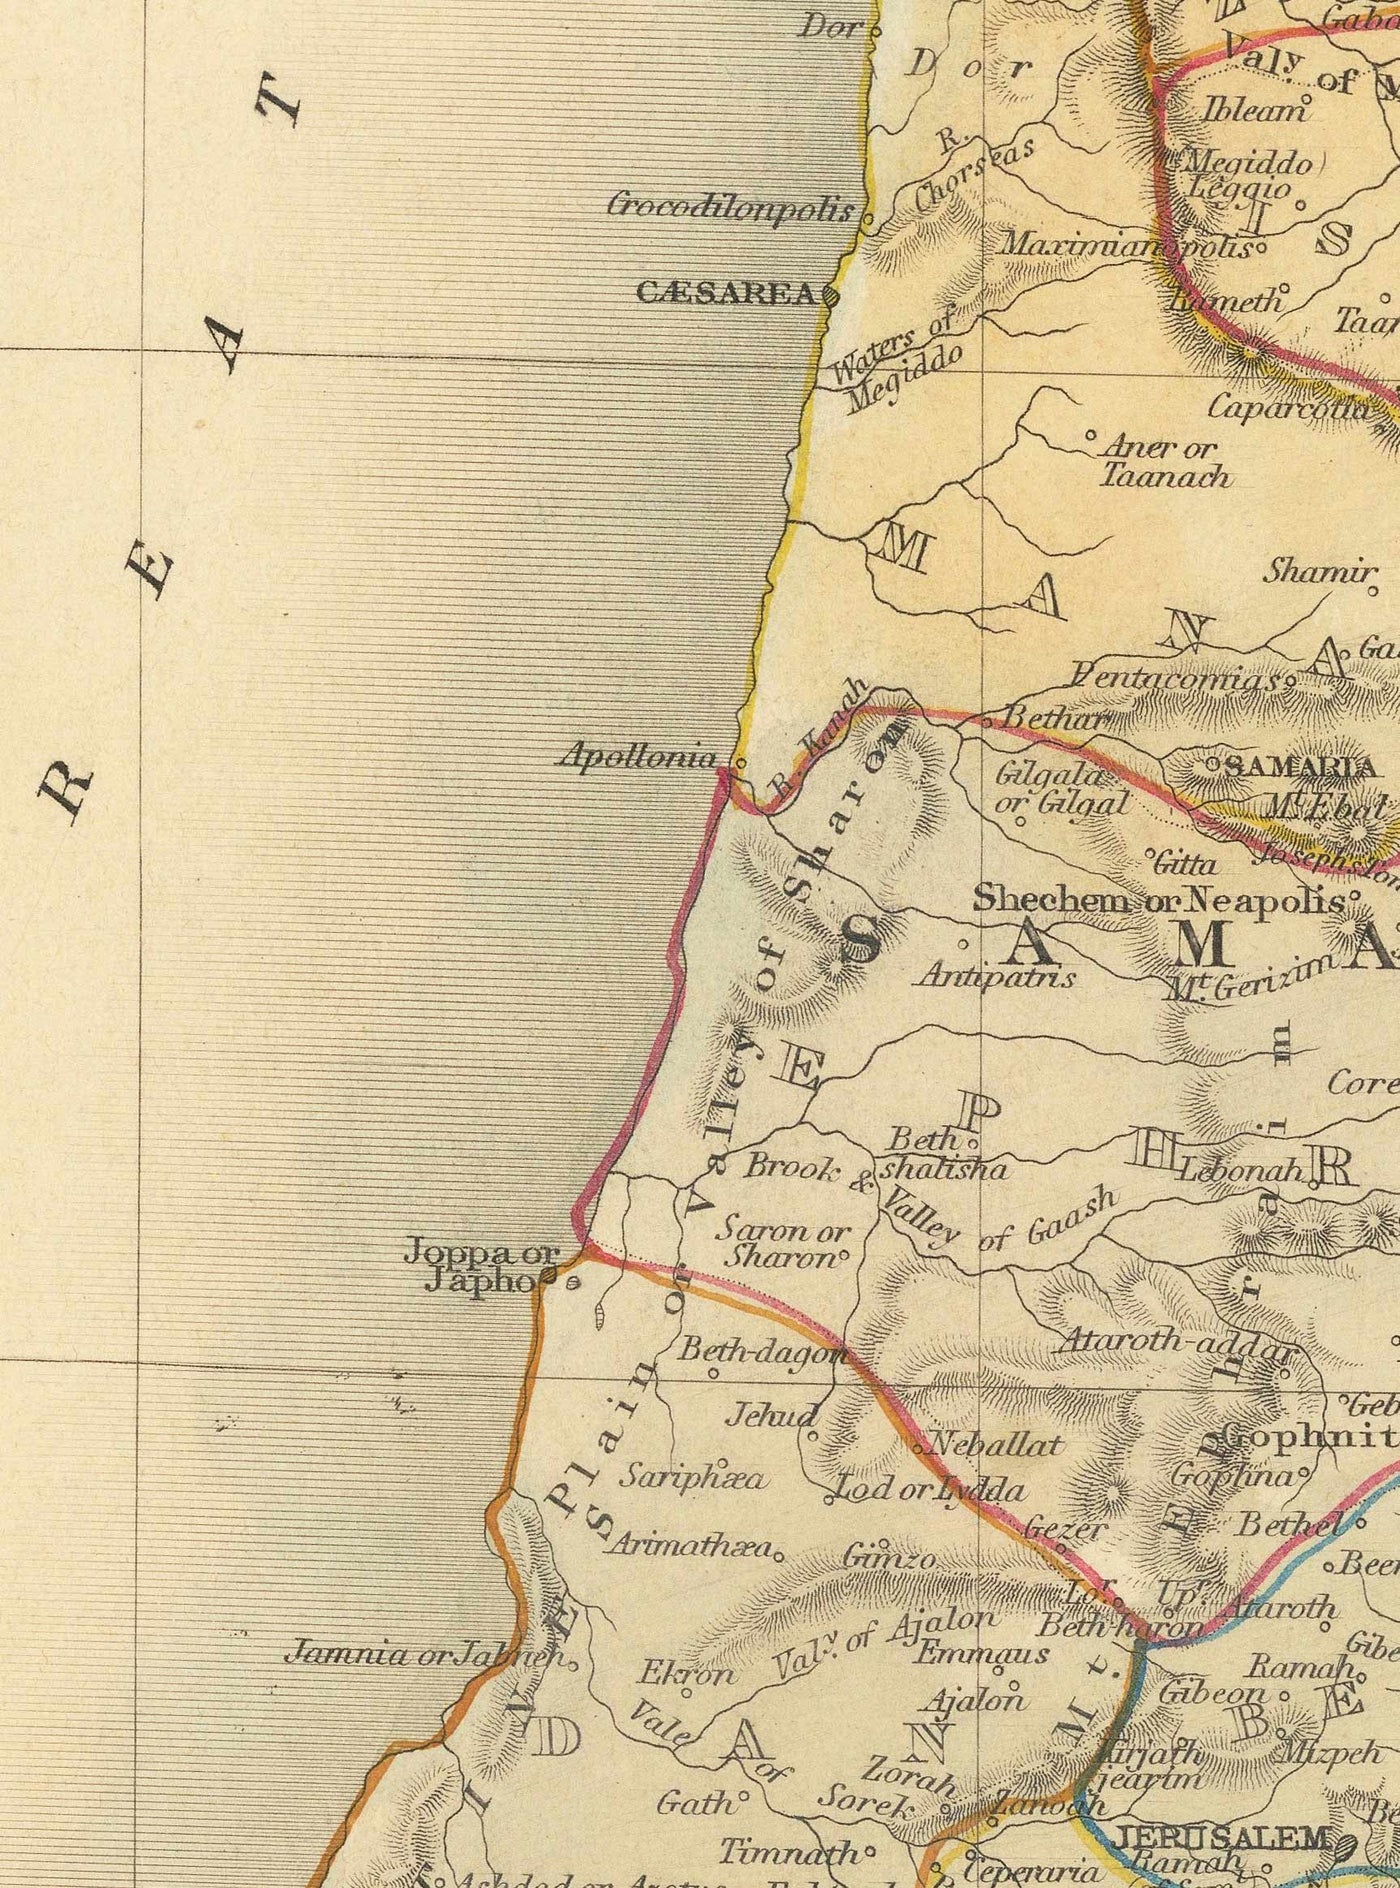 Alte Karte des alten Palästinas im Jahr 1851 - Heiliges Land, Kanaan, Jerusalem, Judea, Samaria, Galiläa, Israel, West-Bank, Gaza